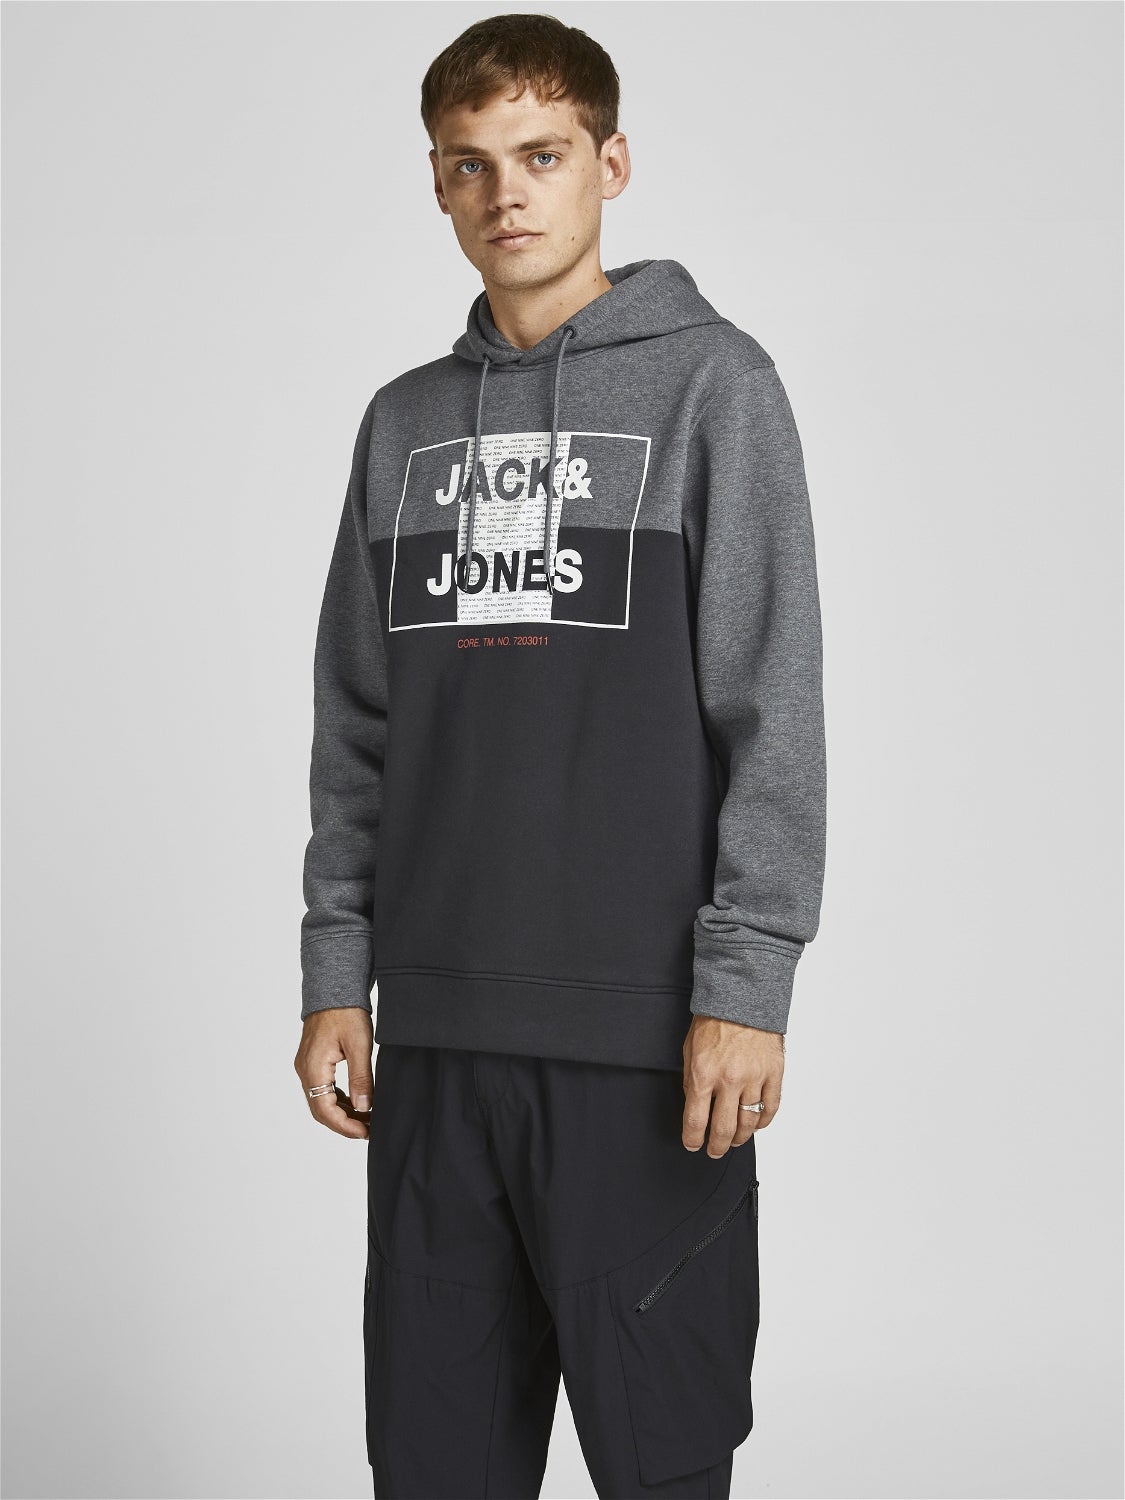 Rabatt 58 % Jack & Jones Pullover HERREN Pullovers & Sweatshirts Stricken Schwarz XL 